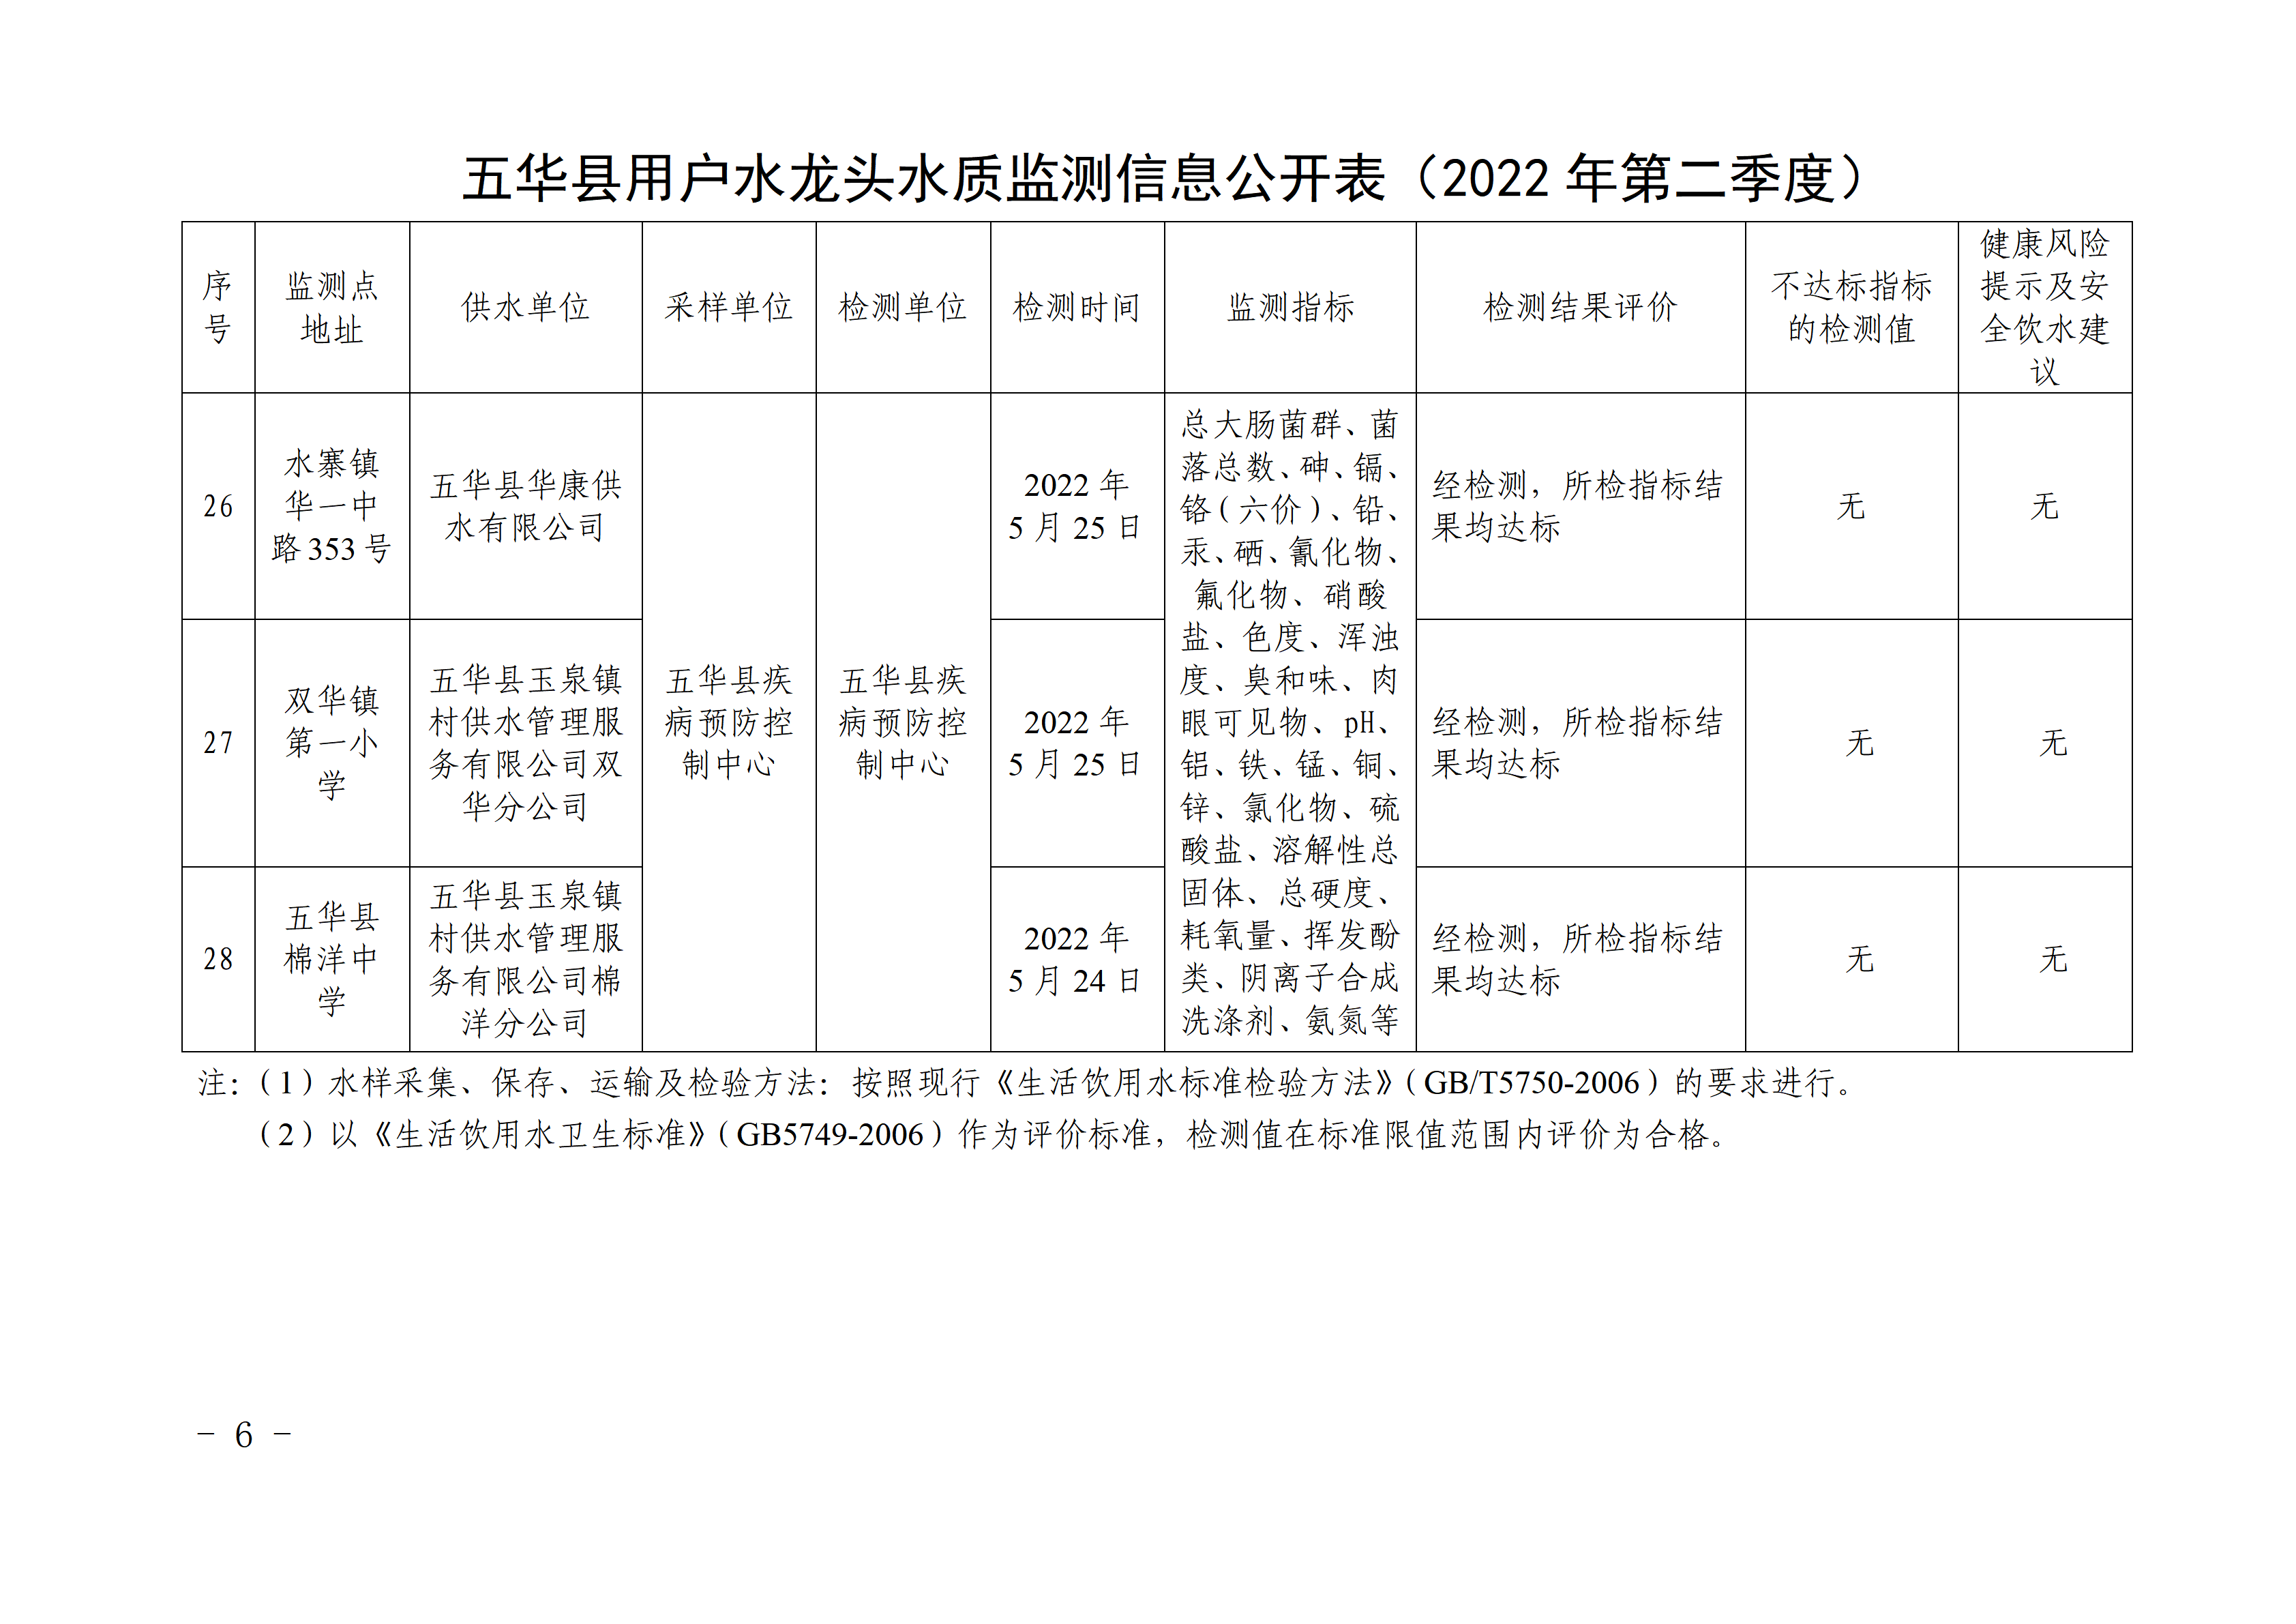 关于五华县2022年第二季度用户水龙头水质监测结果的报告 - 副本_06.png